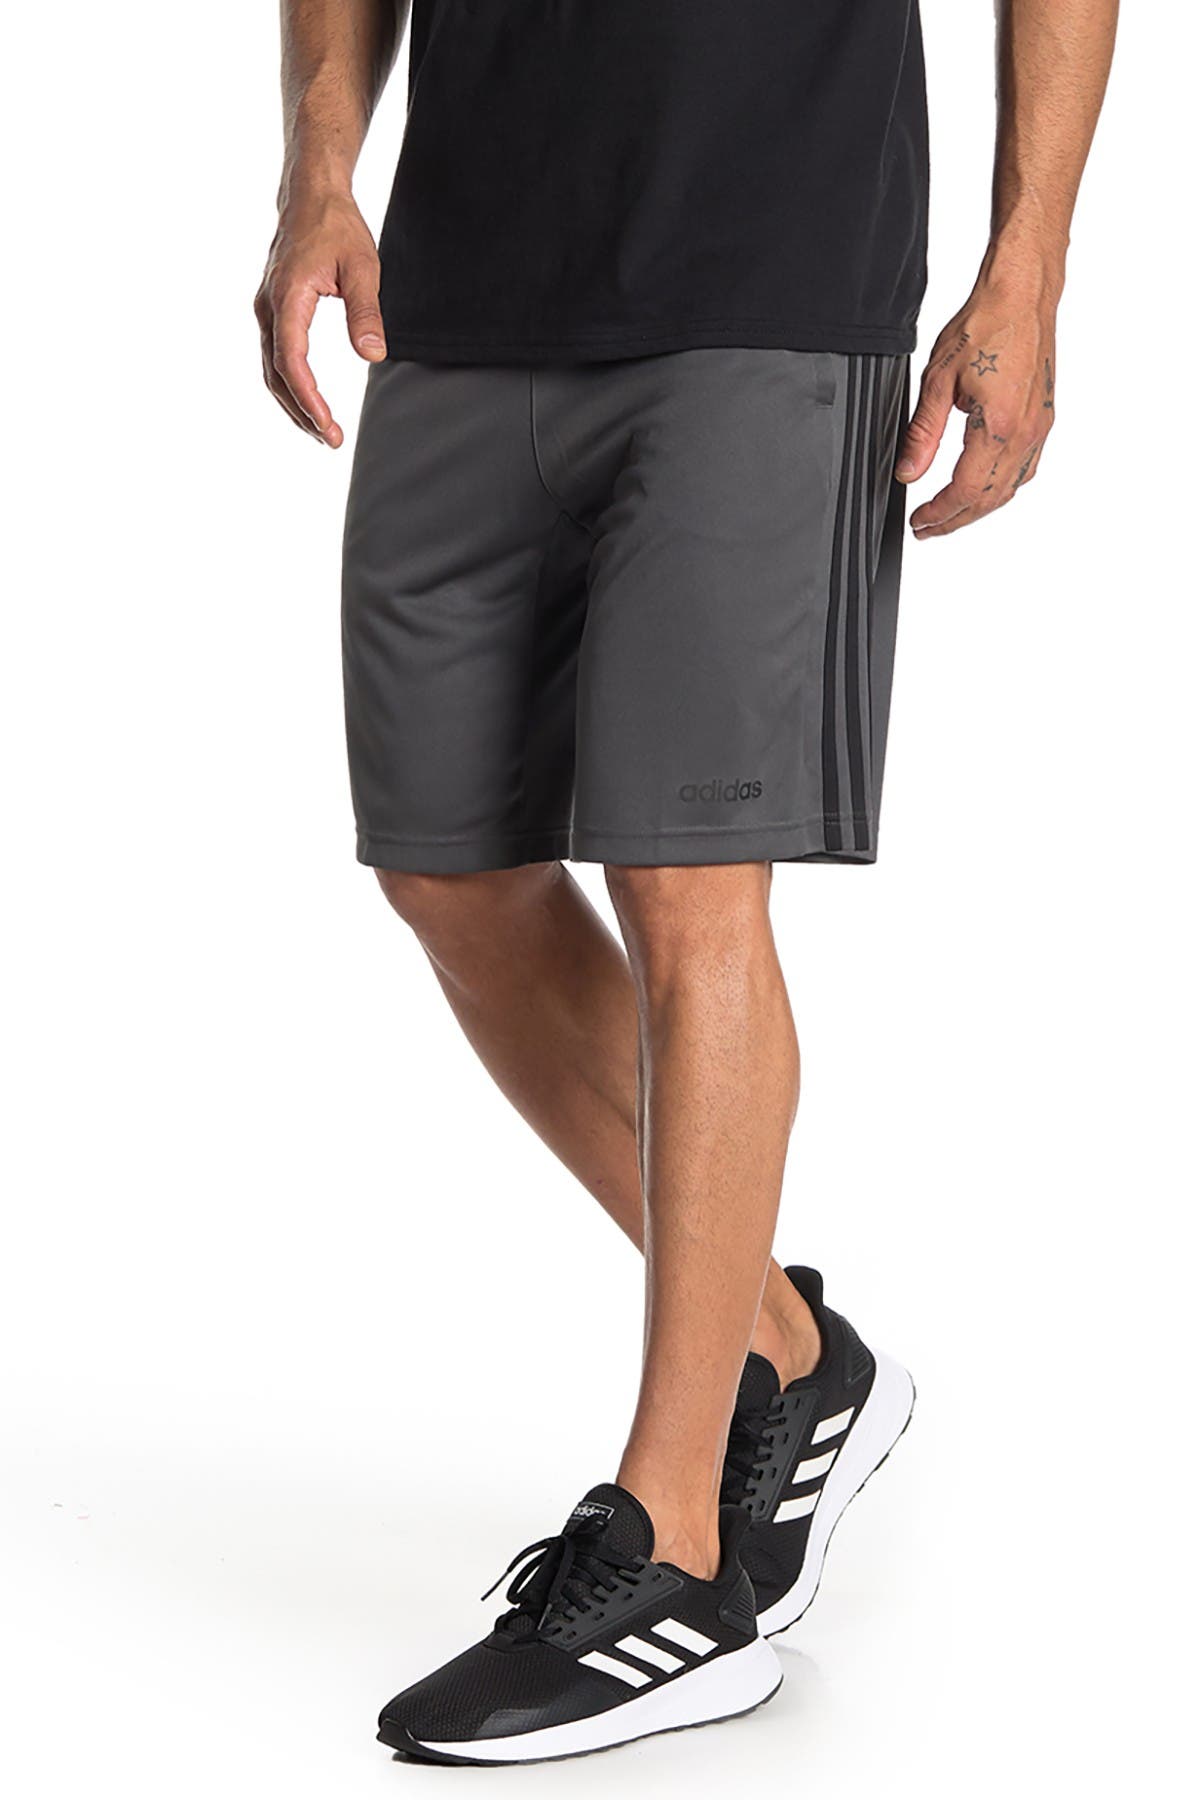 adidas men's designed 2 move climacool training shorts